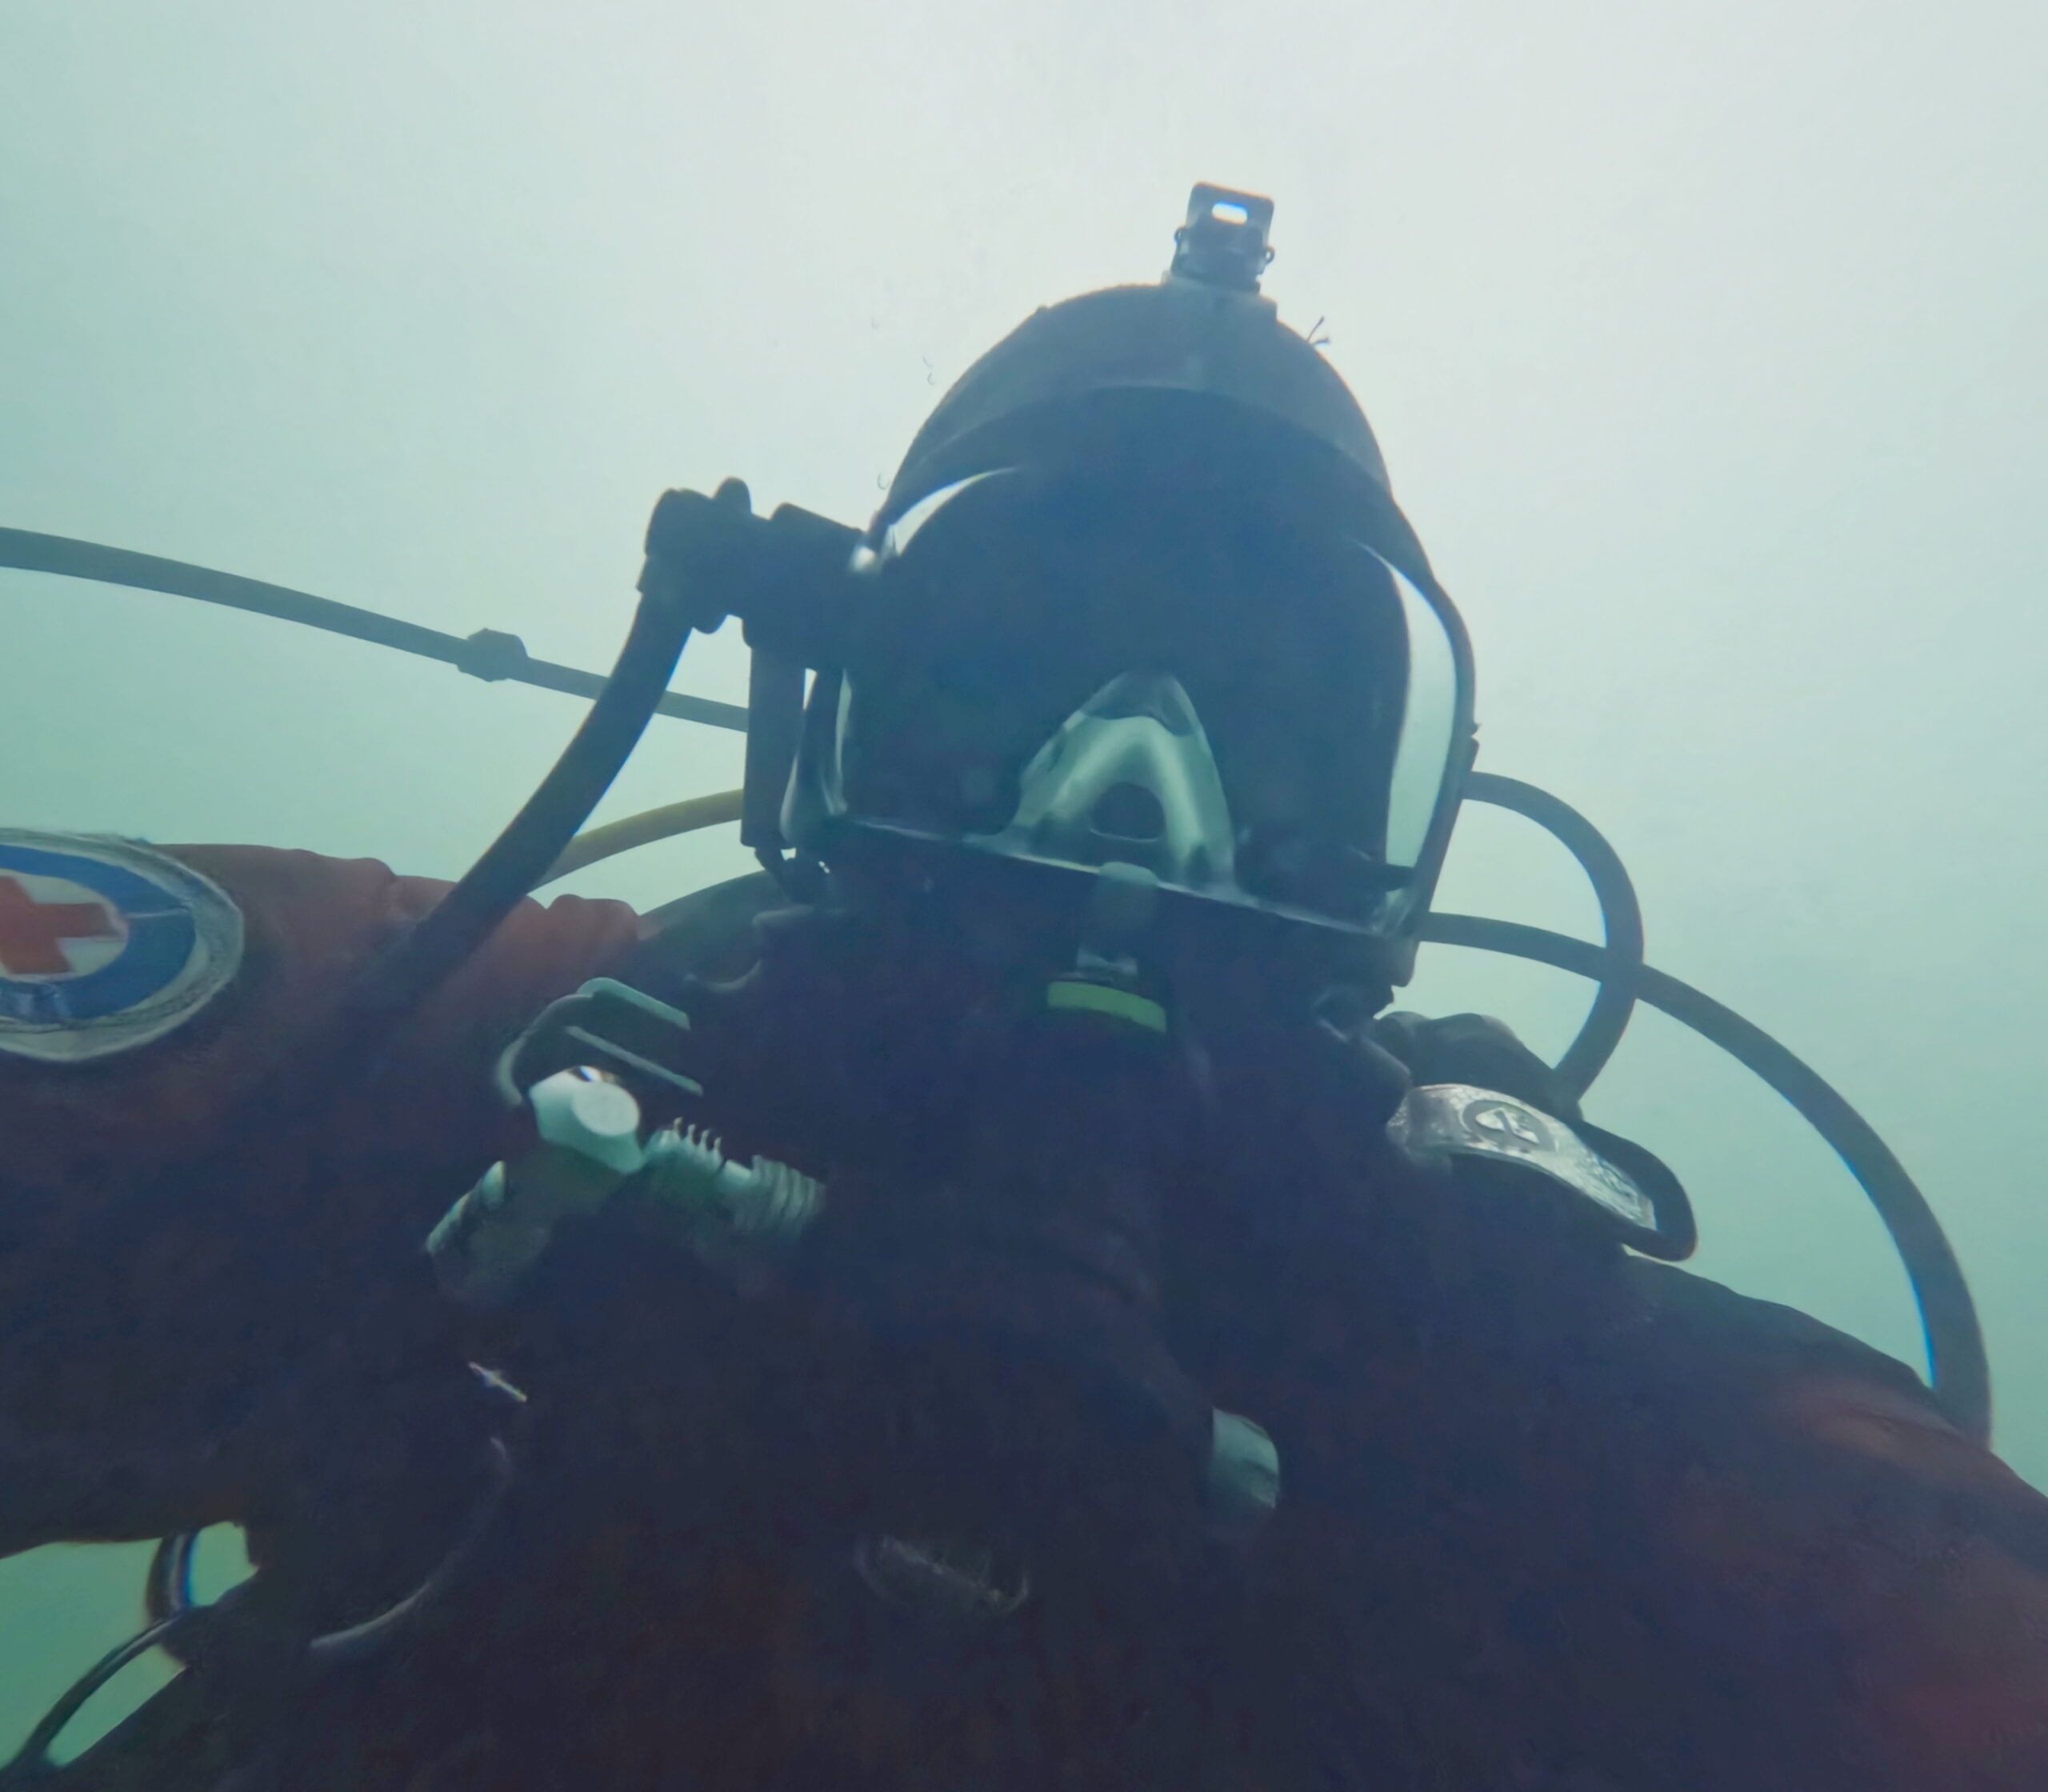 Taucher mit Anzug der Wasserwacht macht unter Wasser ein Selfie